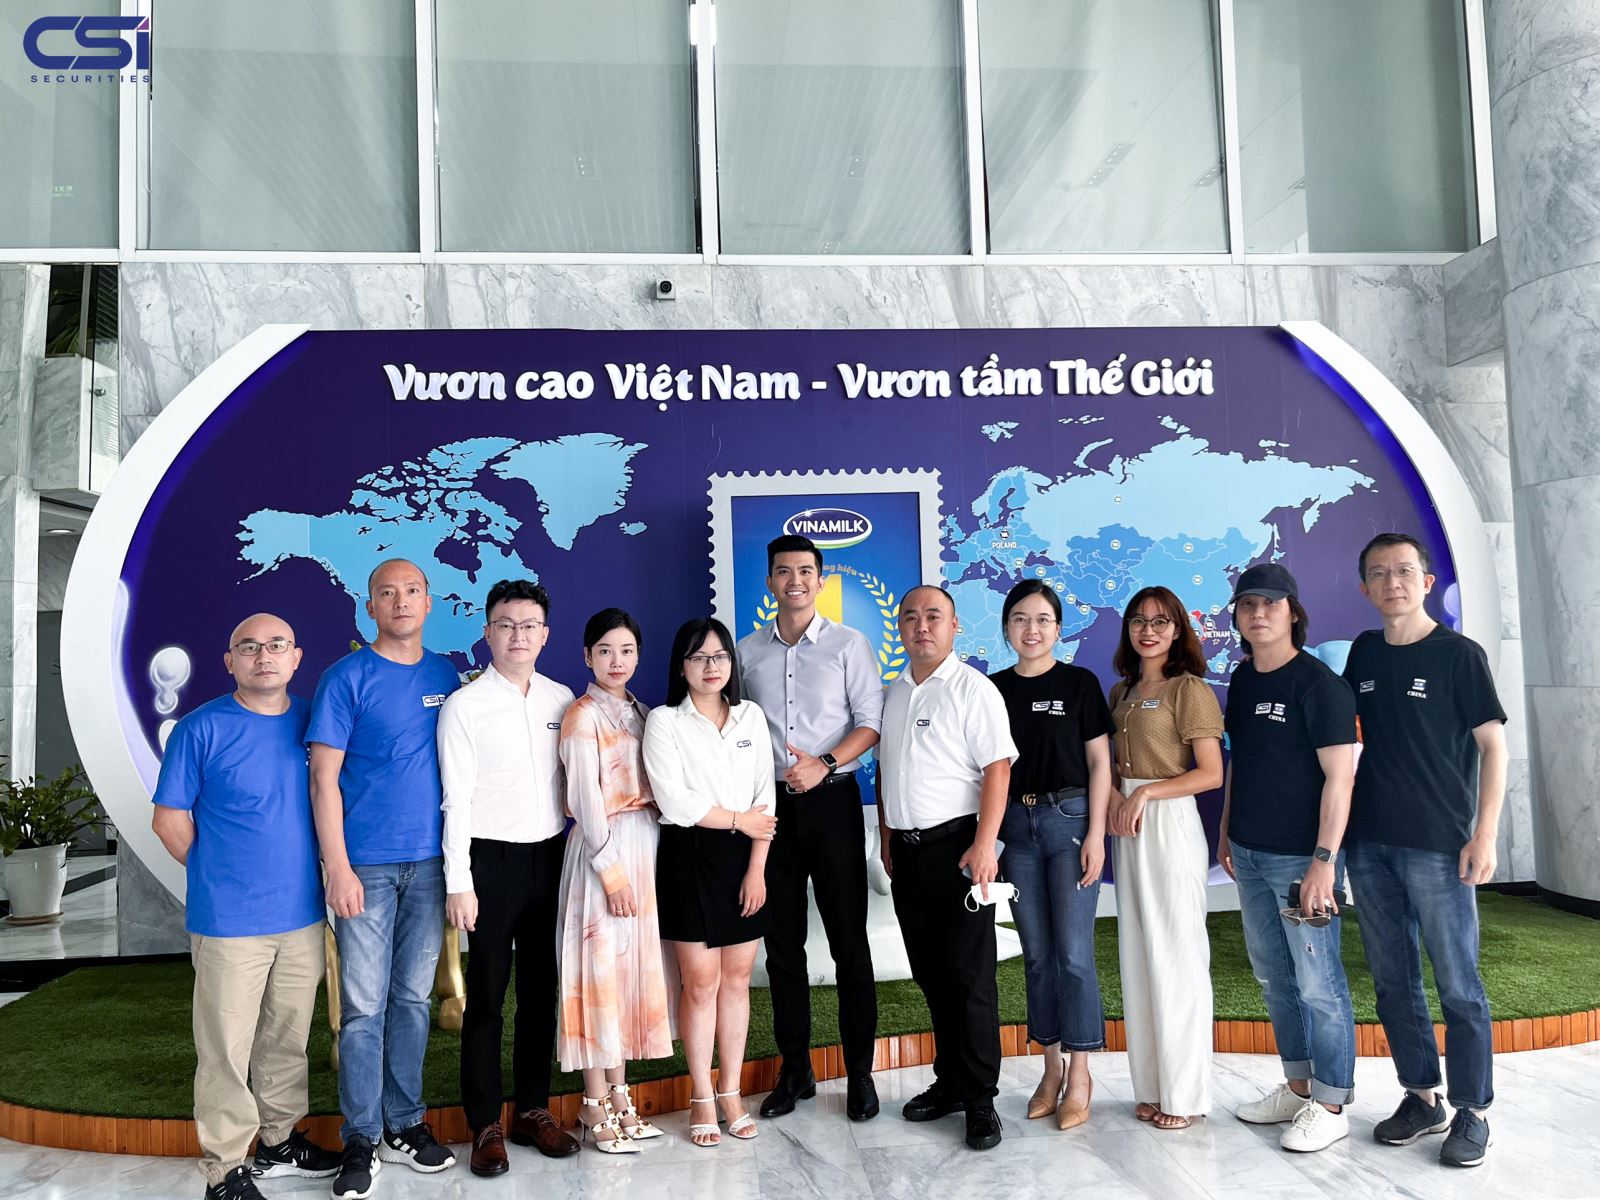 Chứng khoán Kiến Thiết CSI và Chiến dịch Khảo sát 100 doanh nghiệp niêm yết xuất sắc tại Việt Nam (Phần 3) – CTCP Sữa Việt Nam (Mã CK: VNM)